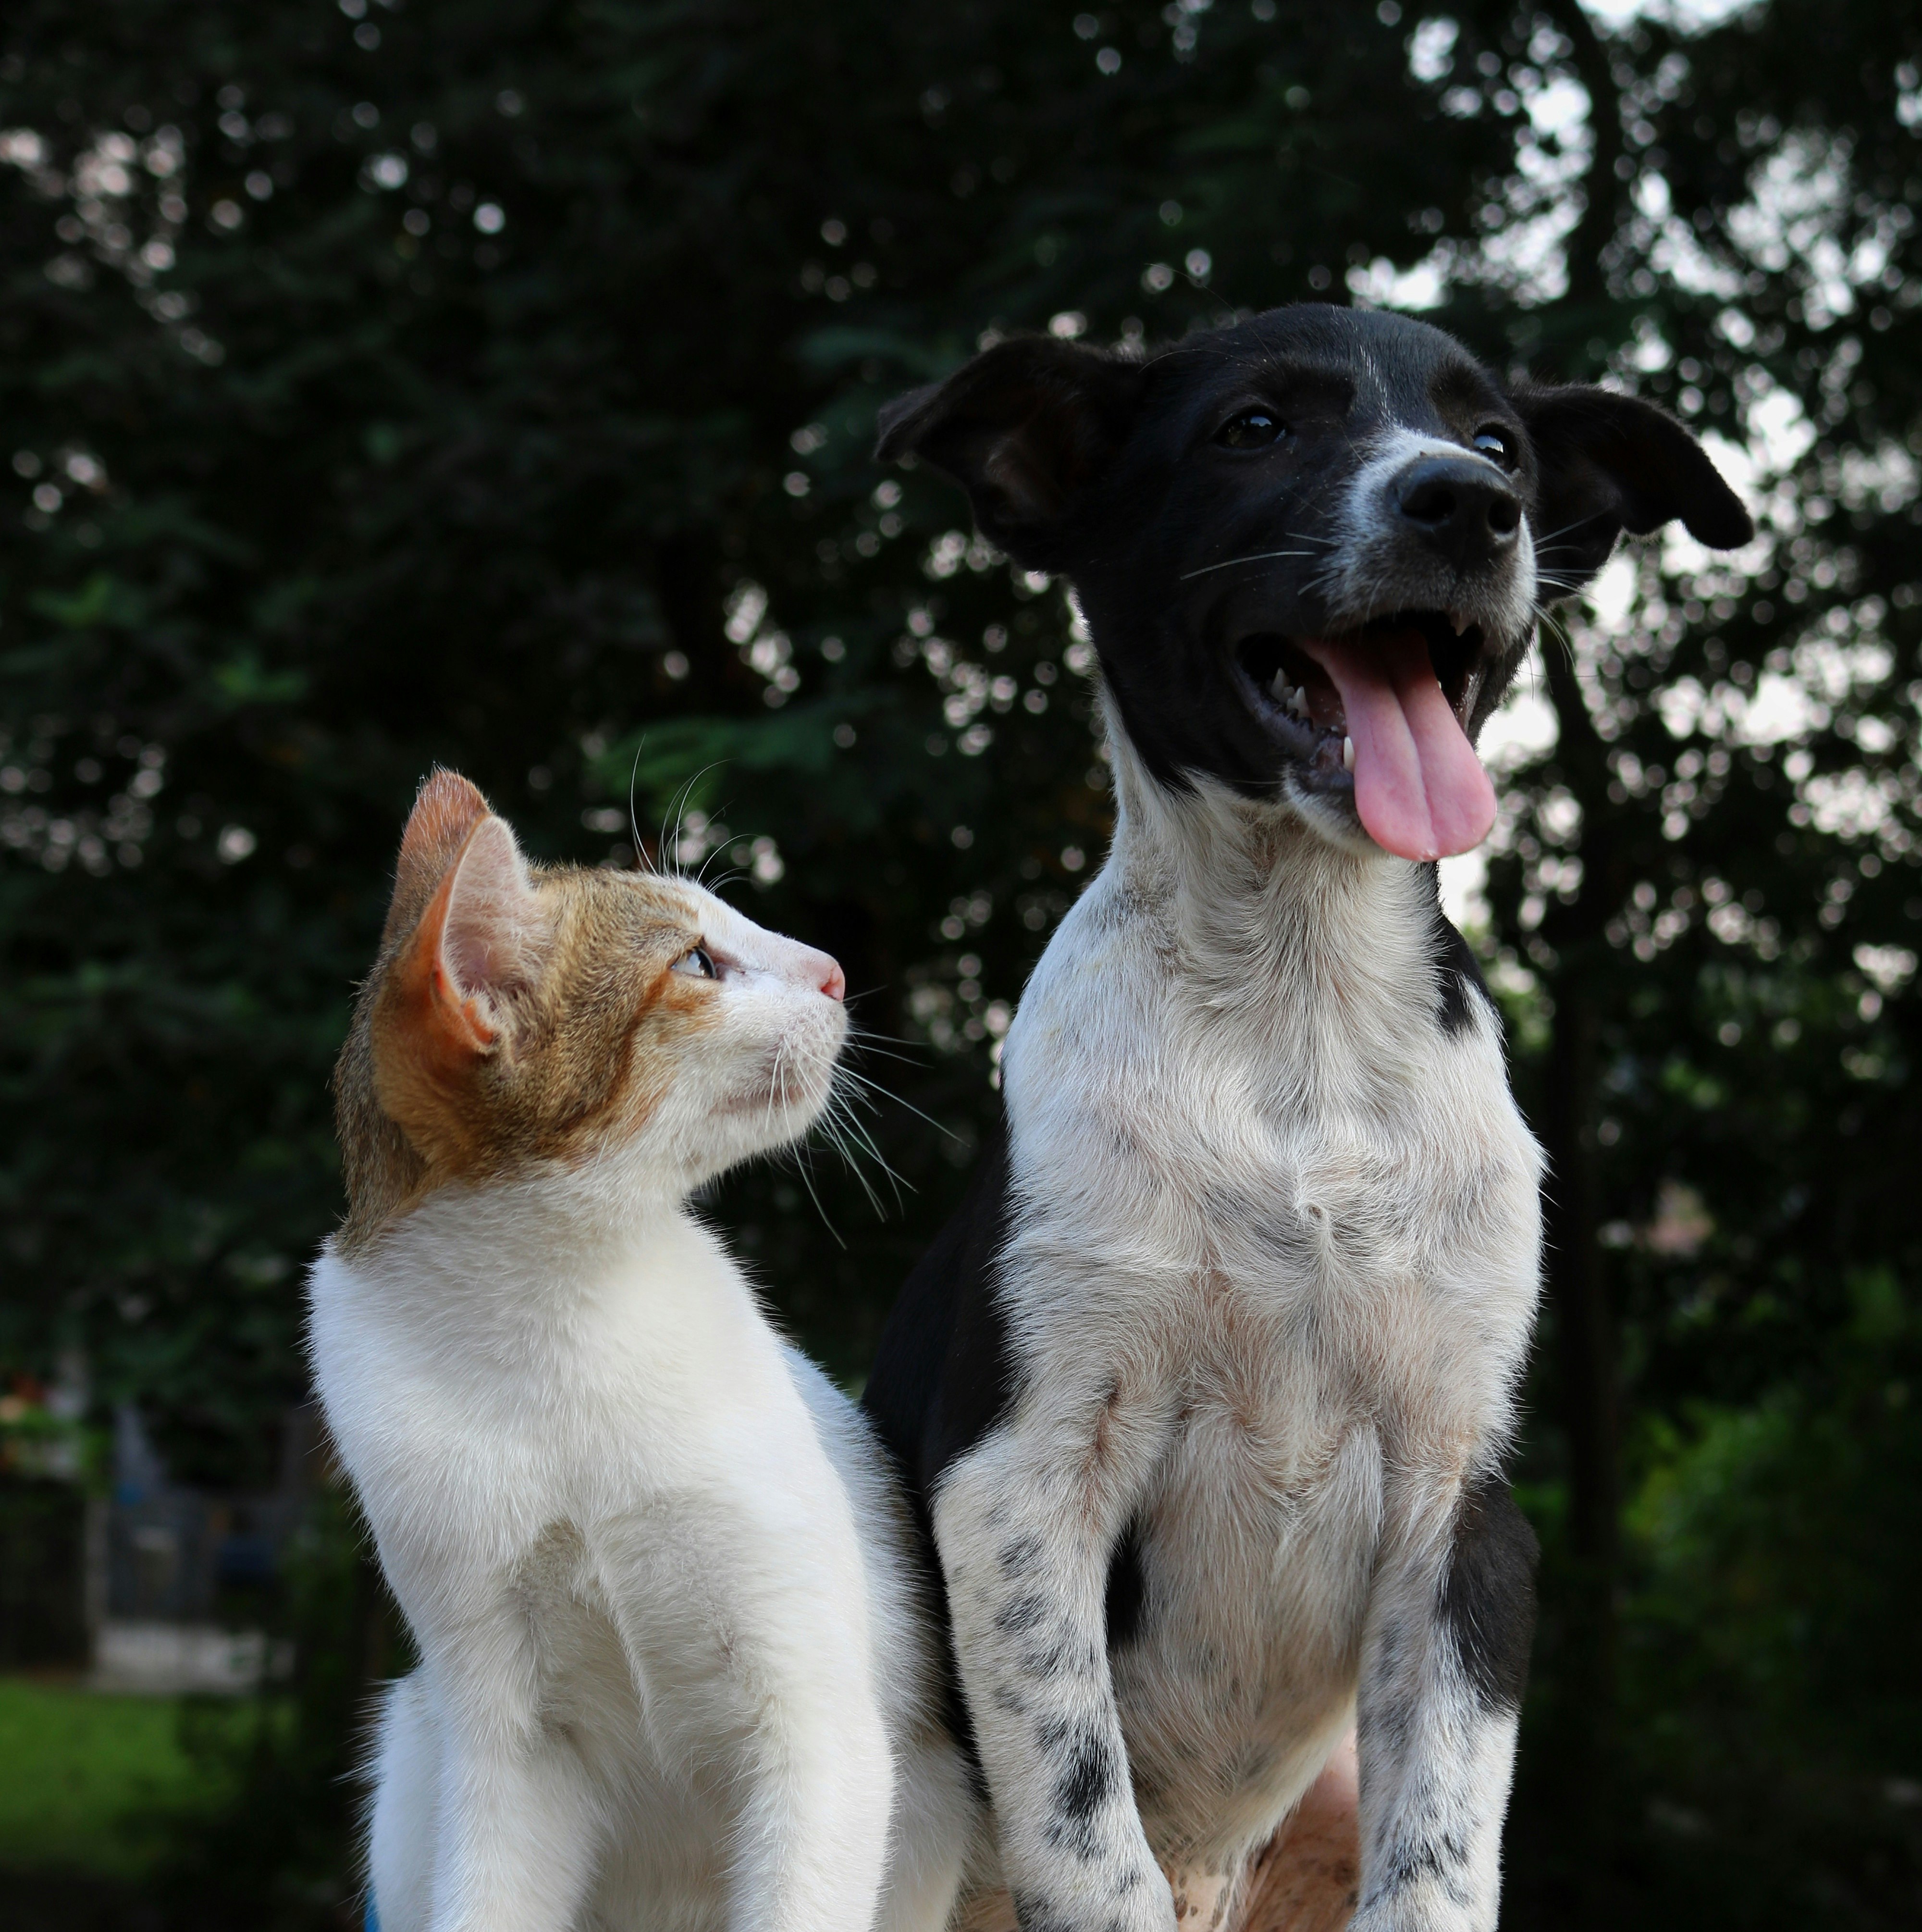 Cat & Dog